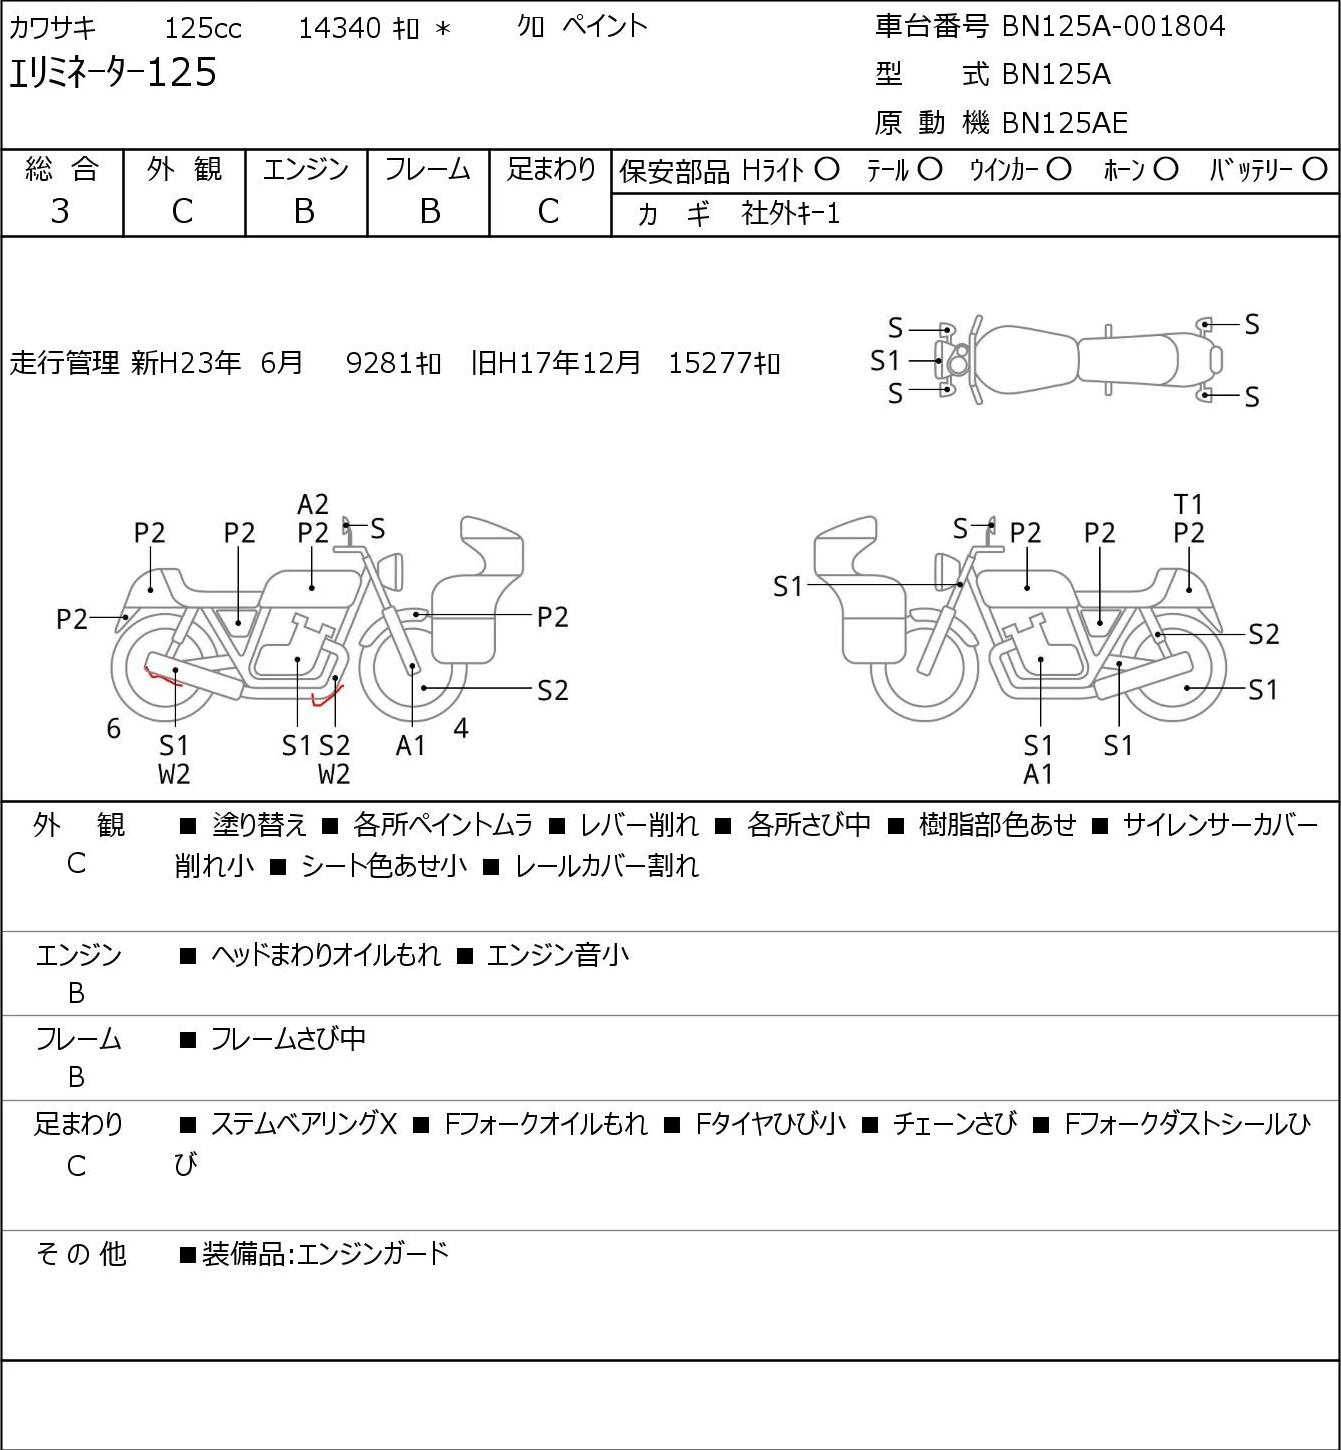 Kawasaki ELIMINATOR 125 BN125A г. 14340